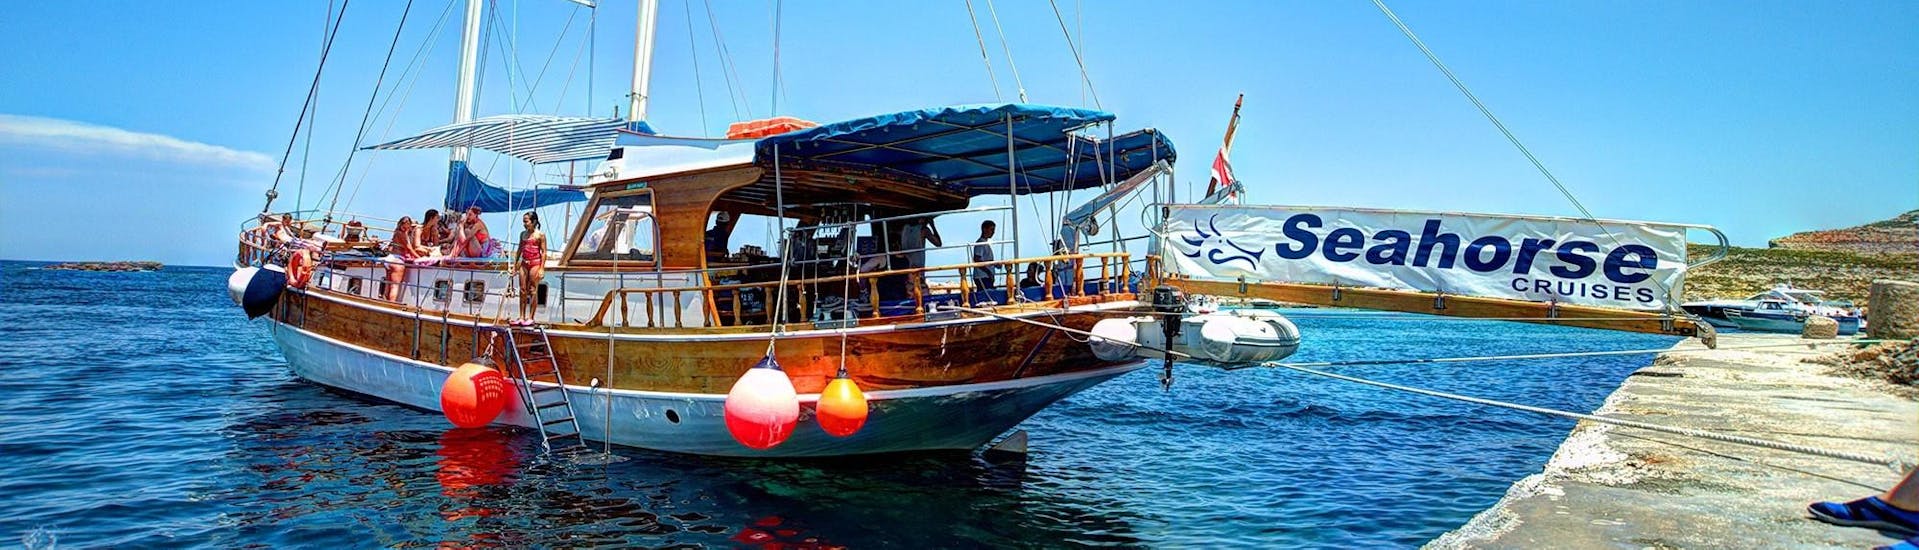 Boot steht im Hafen von Bugibba bereit für die Bootstour von Bugibba nach Comino mit Stopp in der Blauen Lagune organisiert von Seahorse Curises Malta.